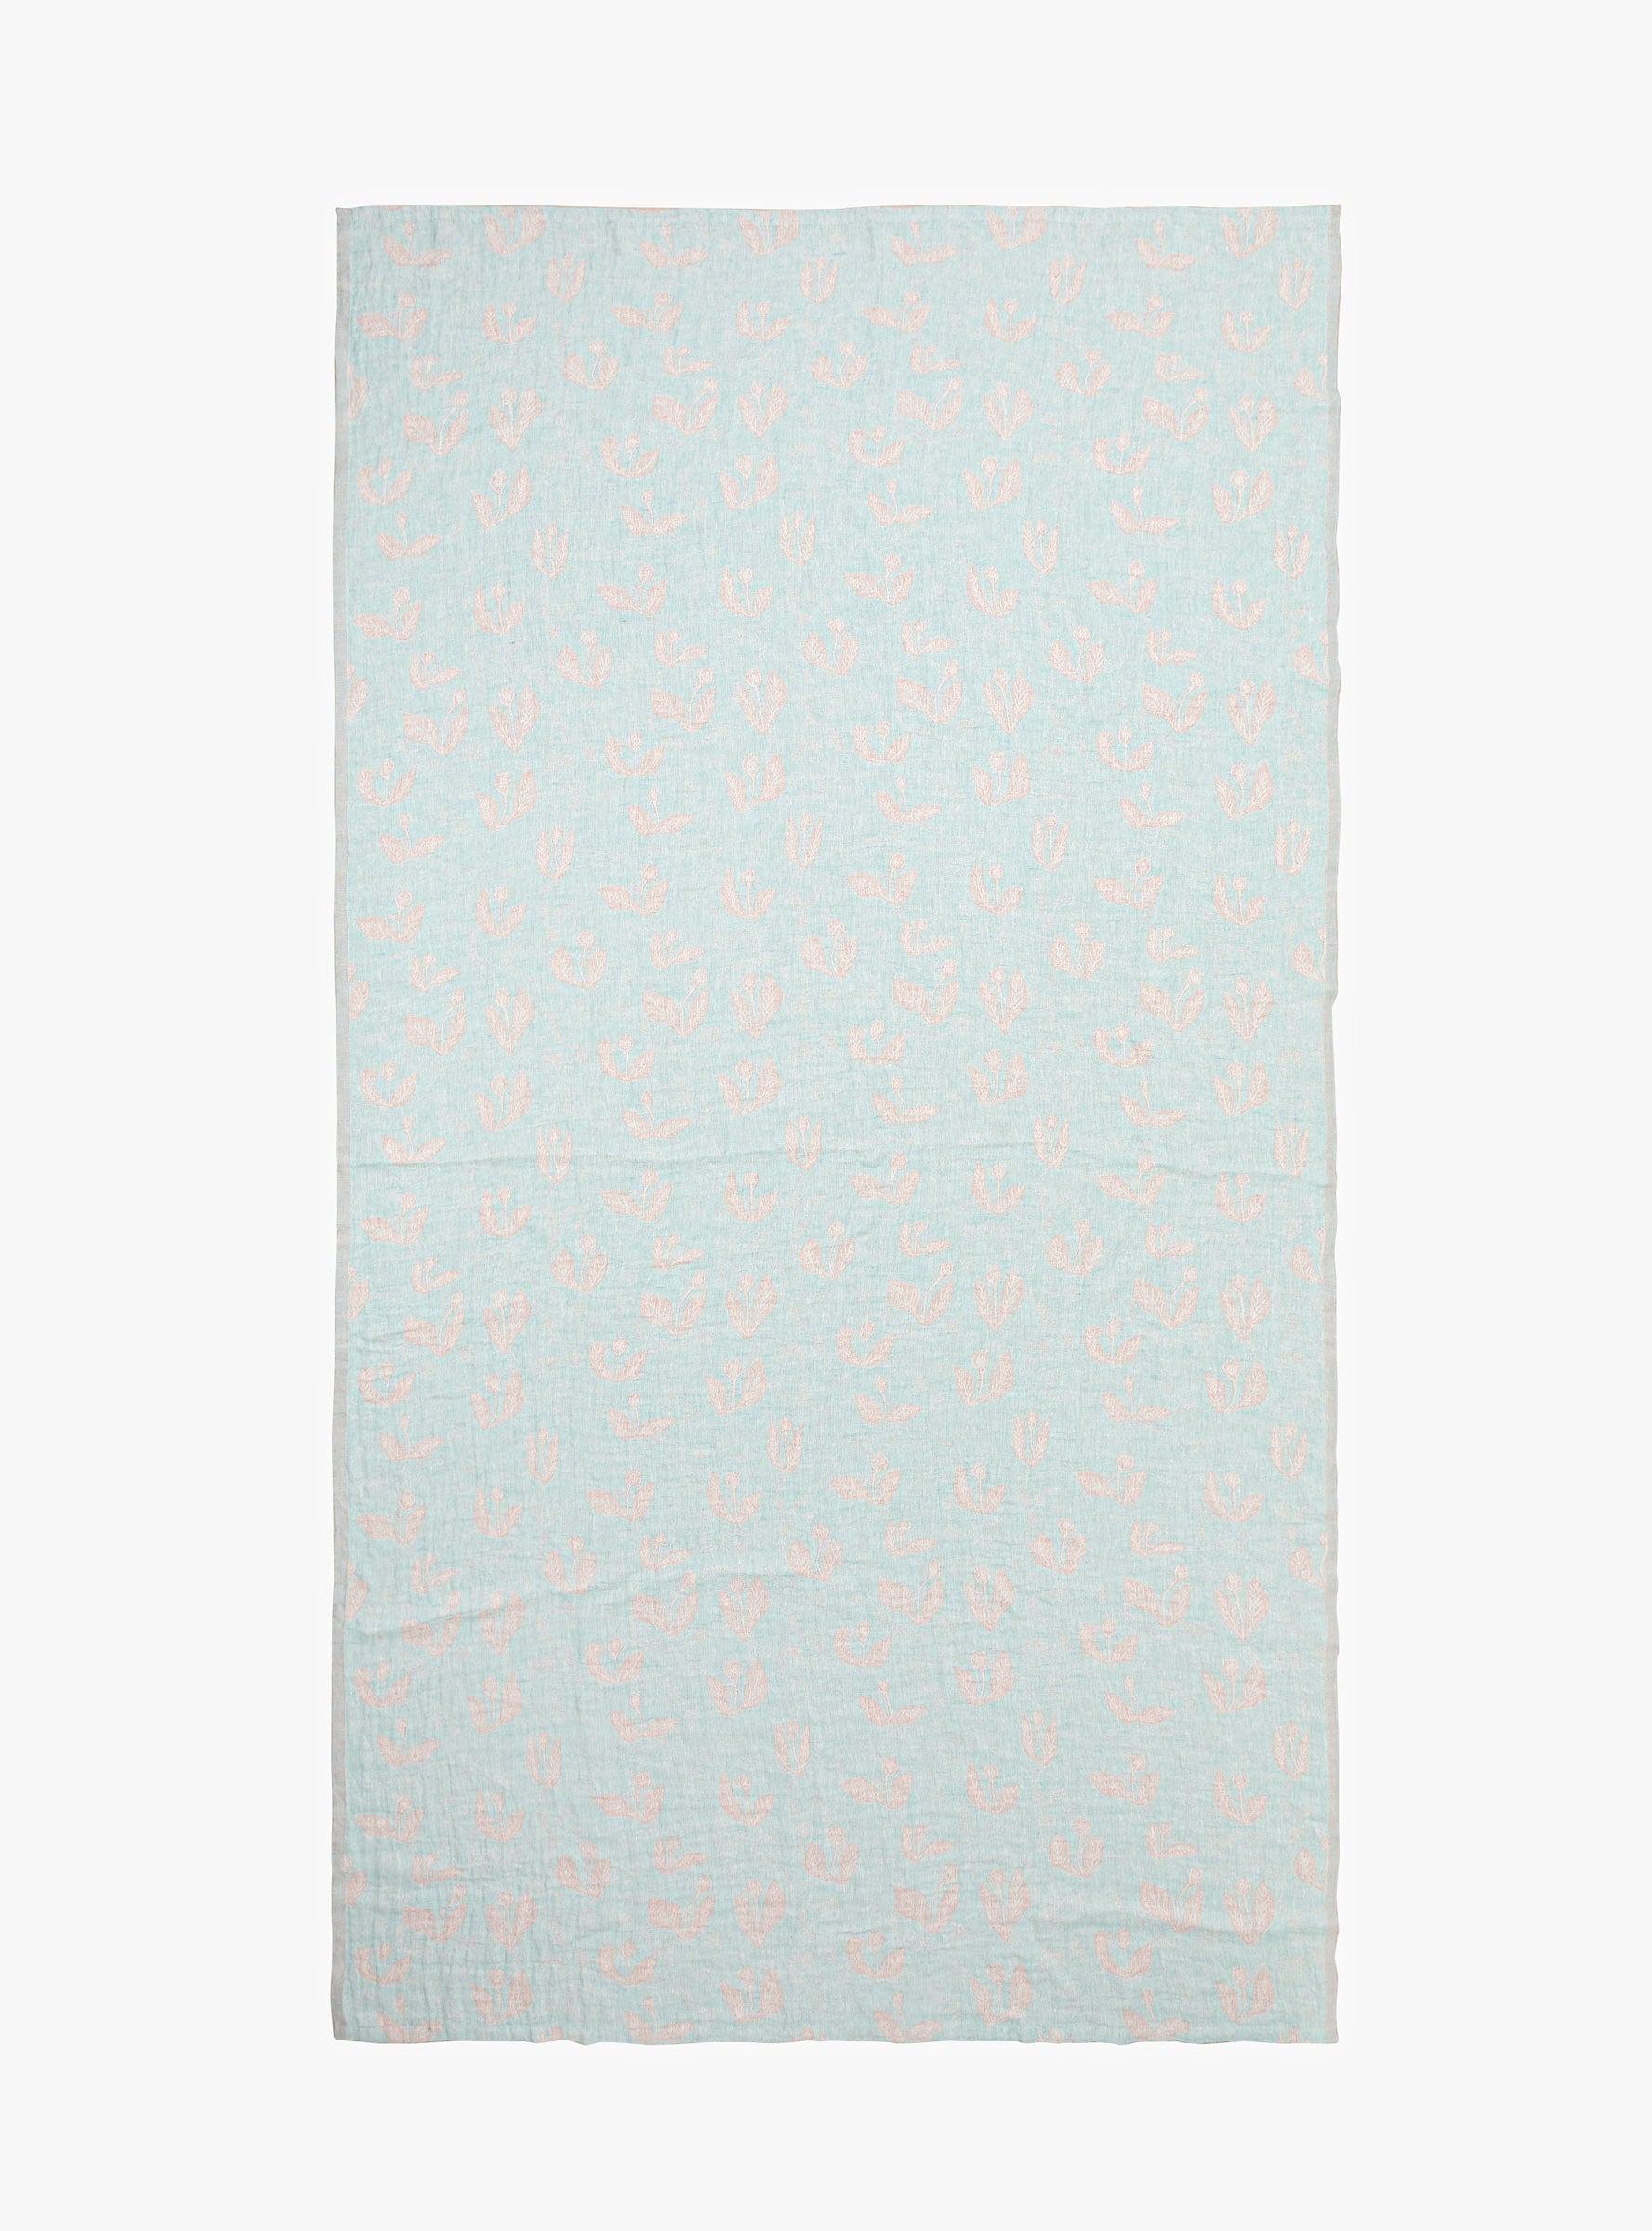  Lapuan Kankurit Oy Kesakukka Tablecloth/Blanket Large